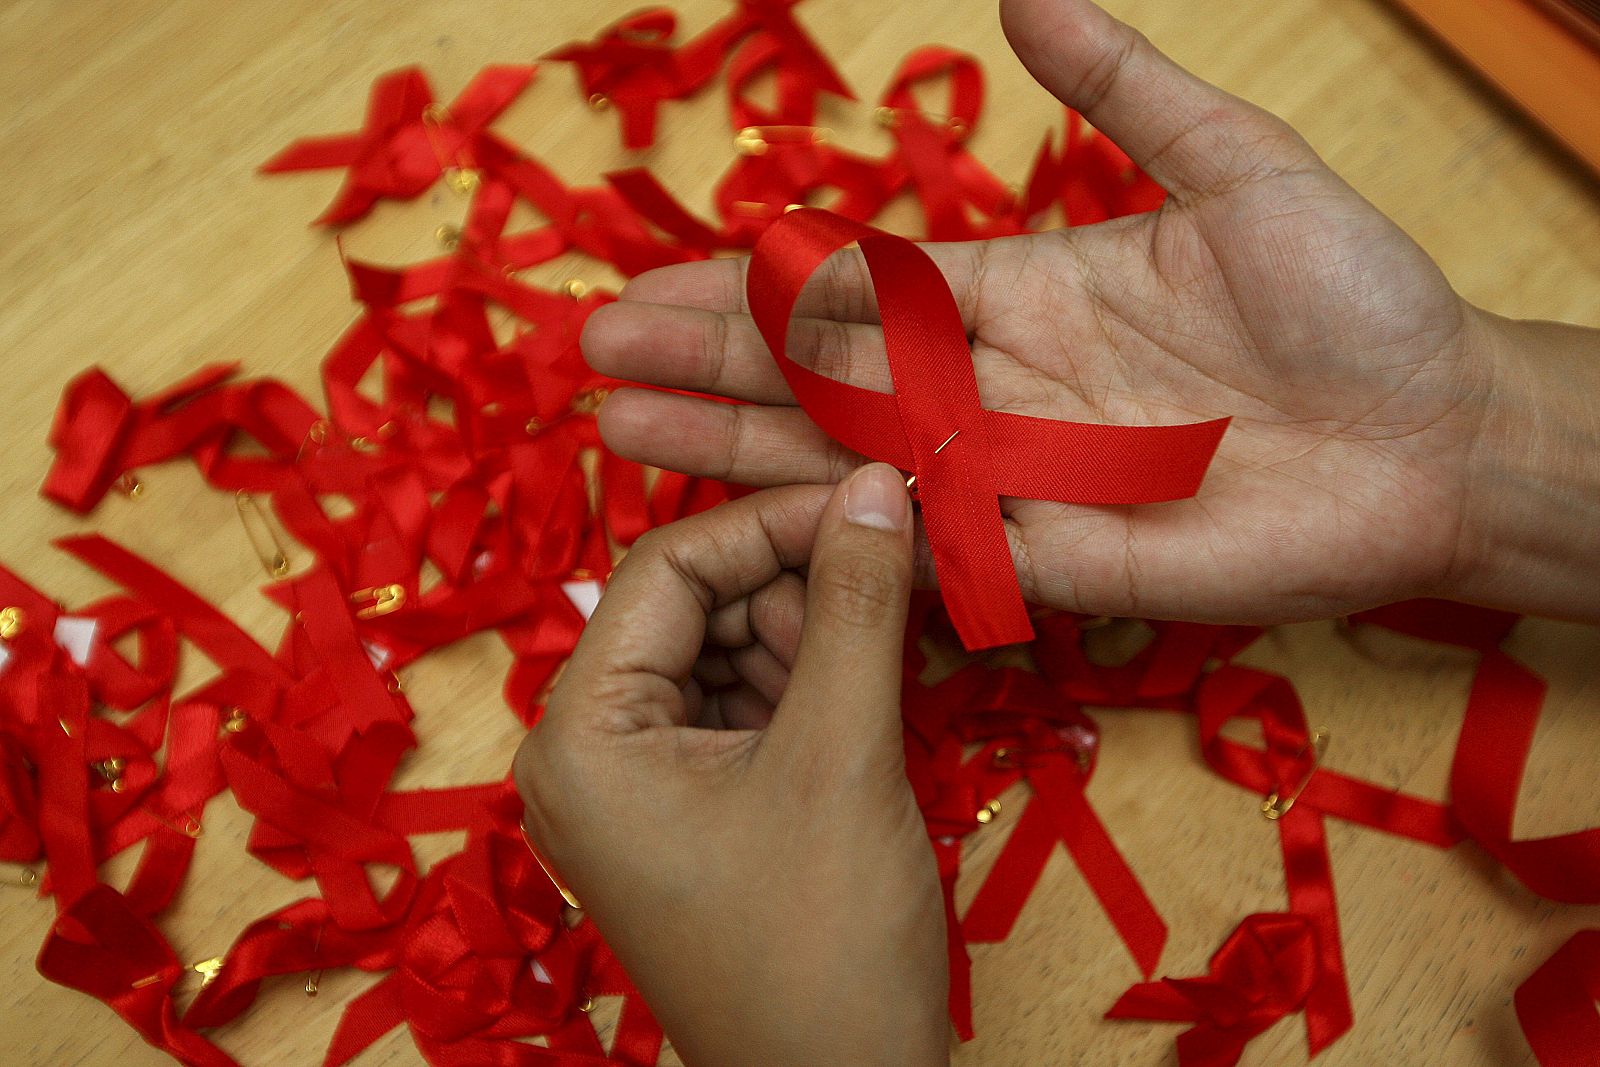 Una joven prepara lazos rojos durante una campaña de concienciación sobre la prevención del contagio del sida